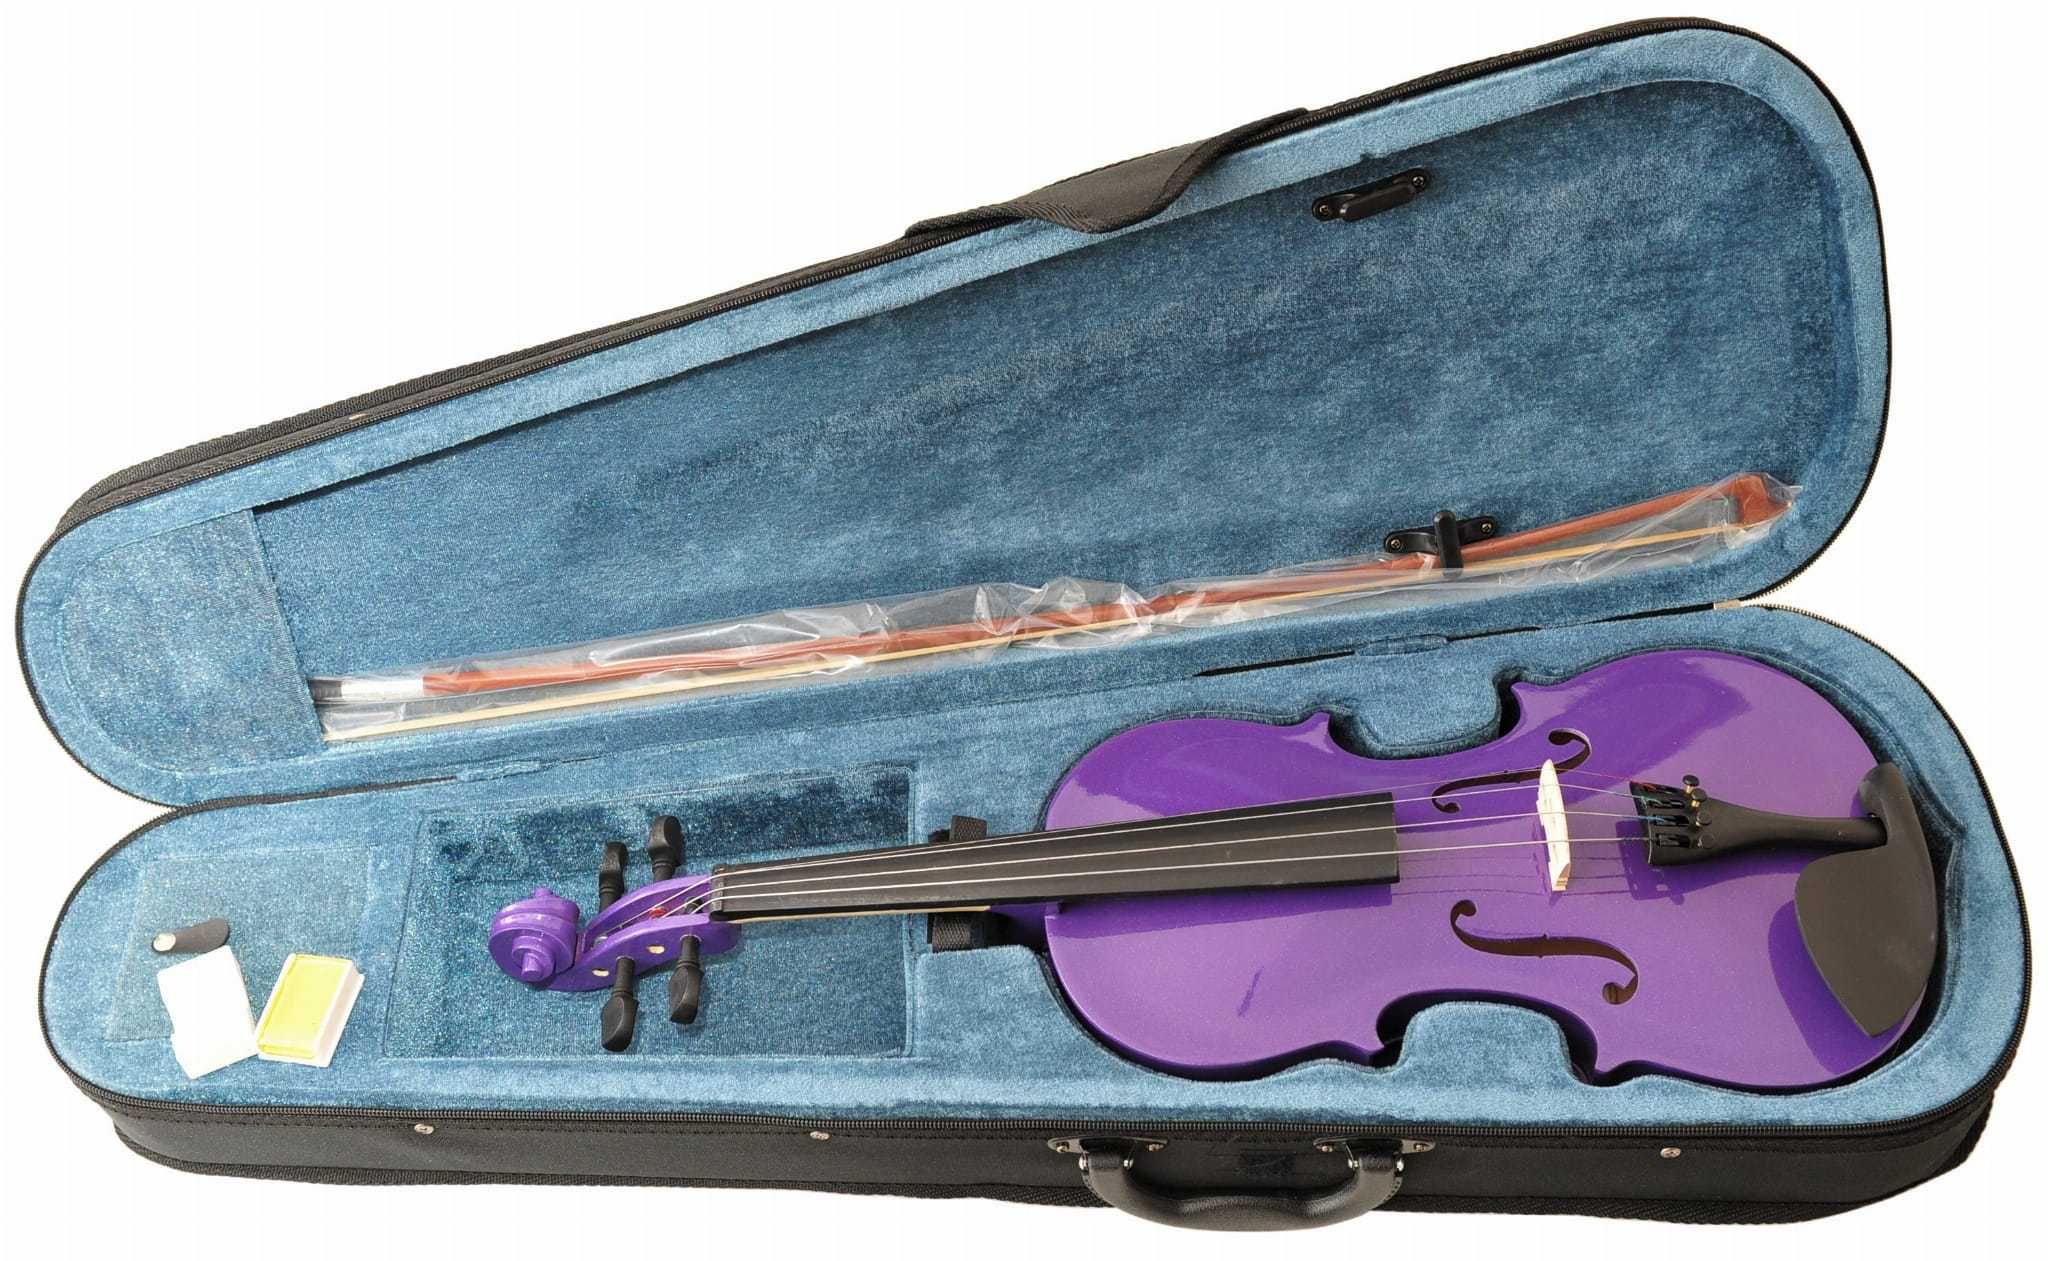 Prima Soloist Violet skrzypce z futerałem i smyczniem różne rozmiary